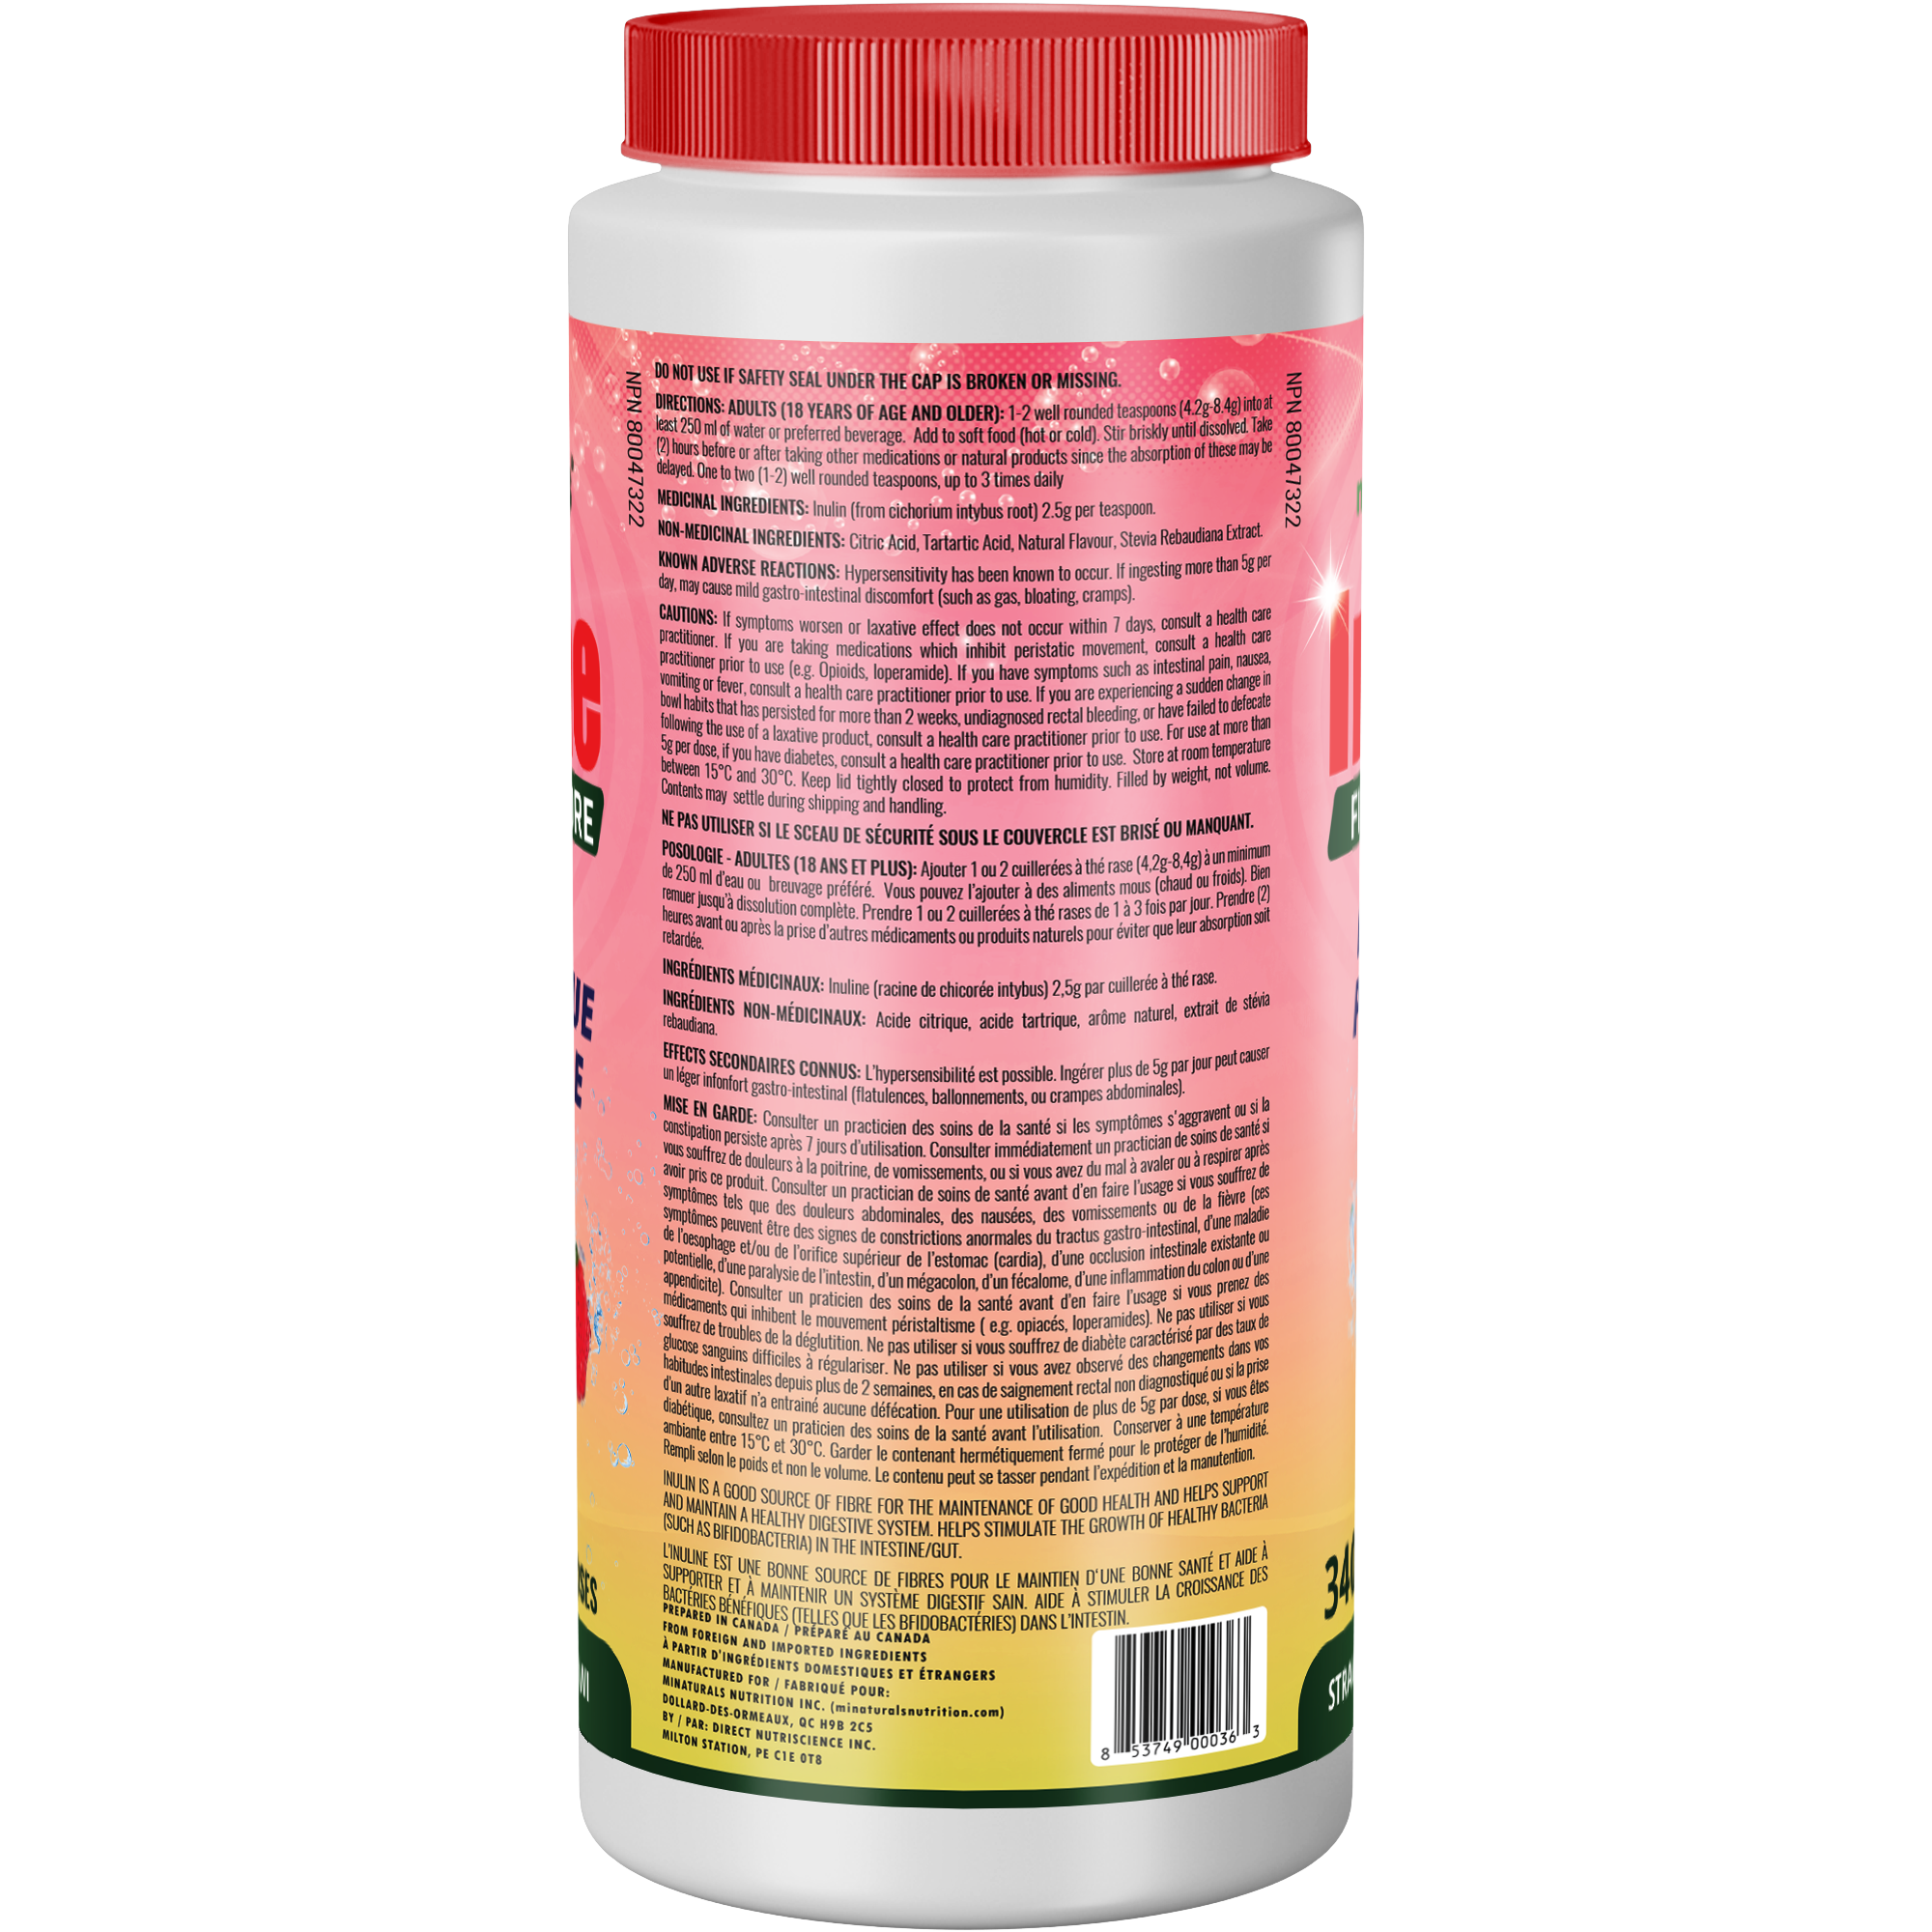 Pure Inulin Fiber Powder - Natural Prebiotic Fibre Supplement (340g - 106 Doses) - Strawberry/Kiwi Flavoured